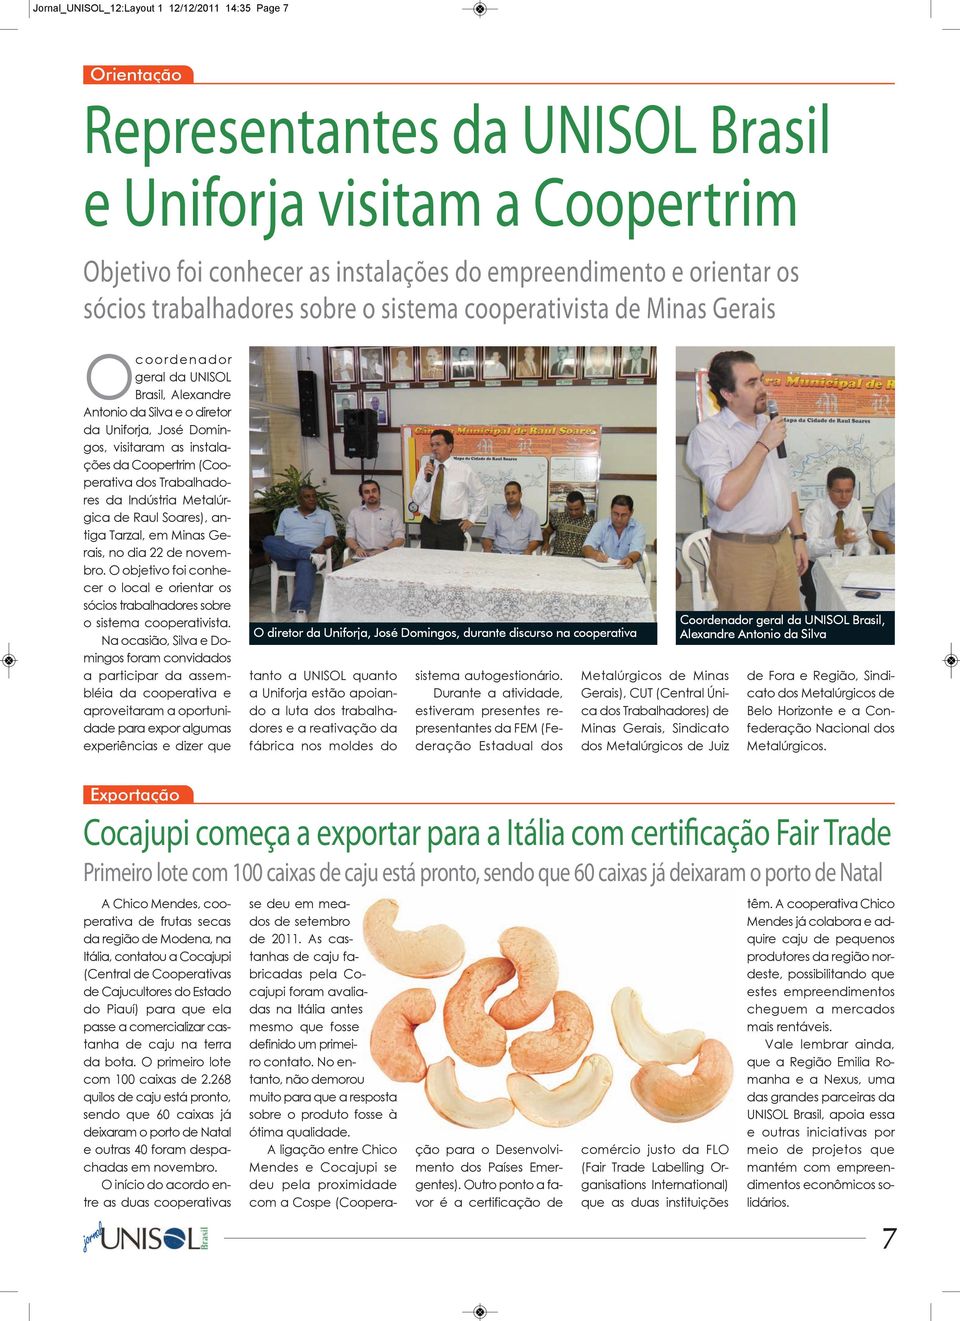 instalações da Coopertrim (Cooperativa dos Trabalhadores da Indústria Metalúrgica de Raul Soares), antiga Tarzal, em Minas Gerais, no dia 22 de novembro.